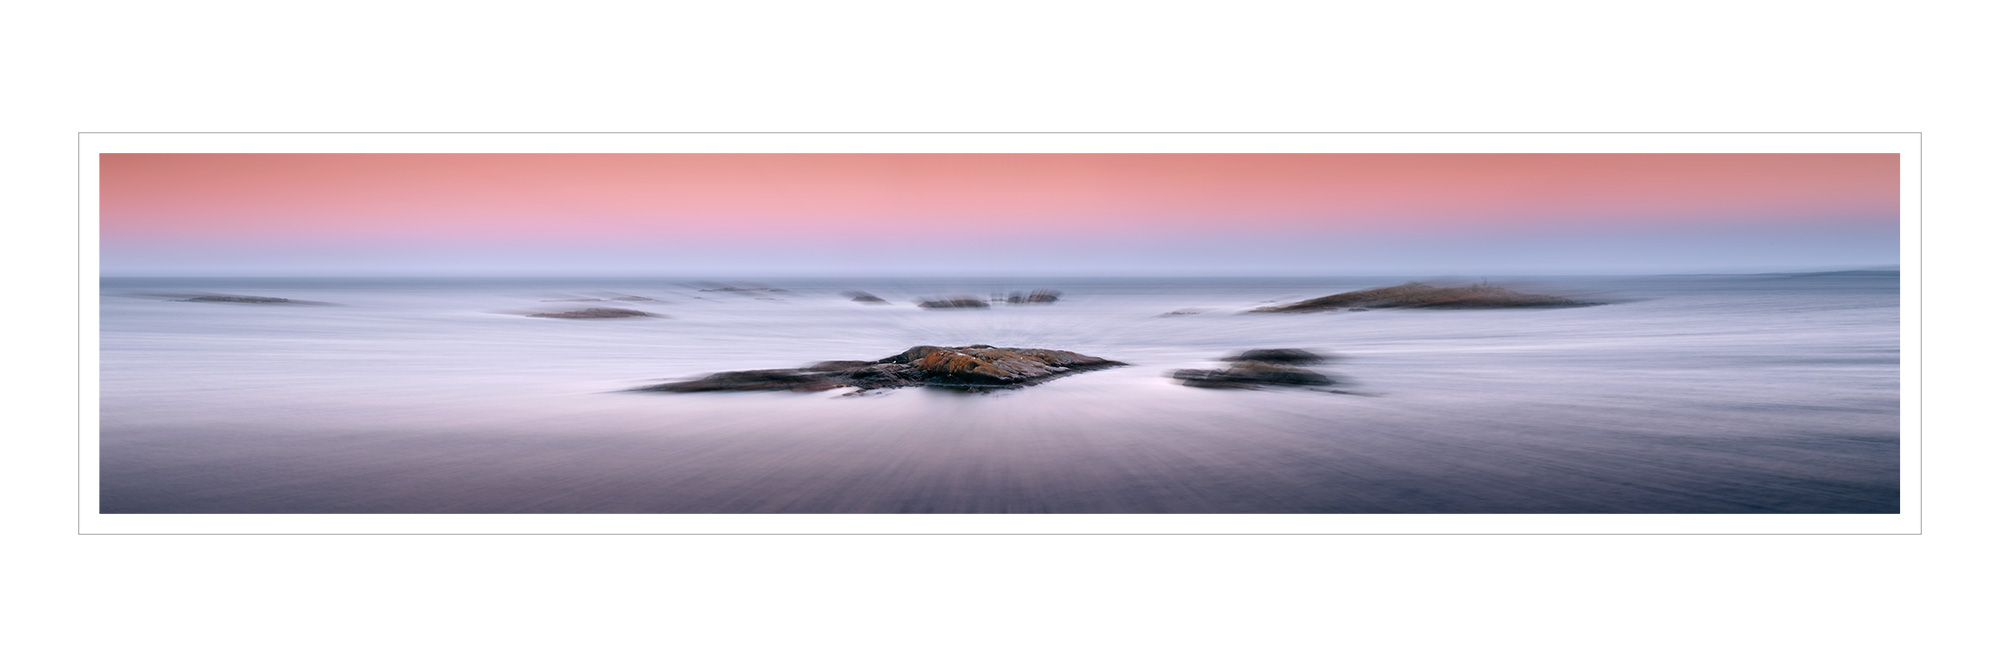 Sweden-Grisslehamn-coastline-pano-frame